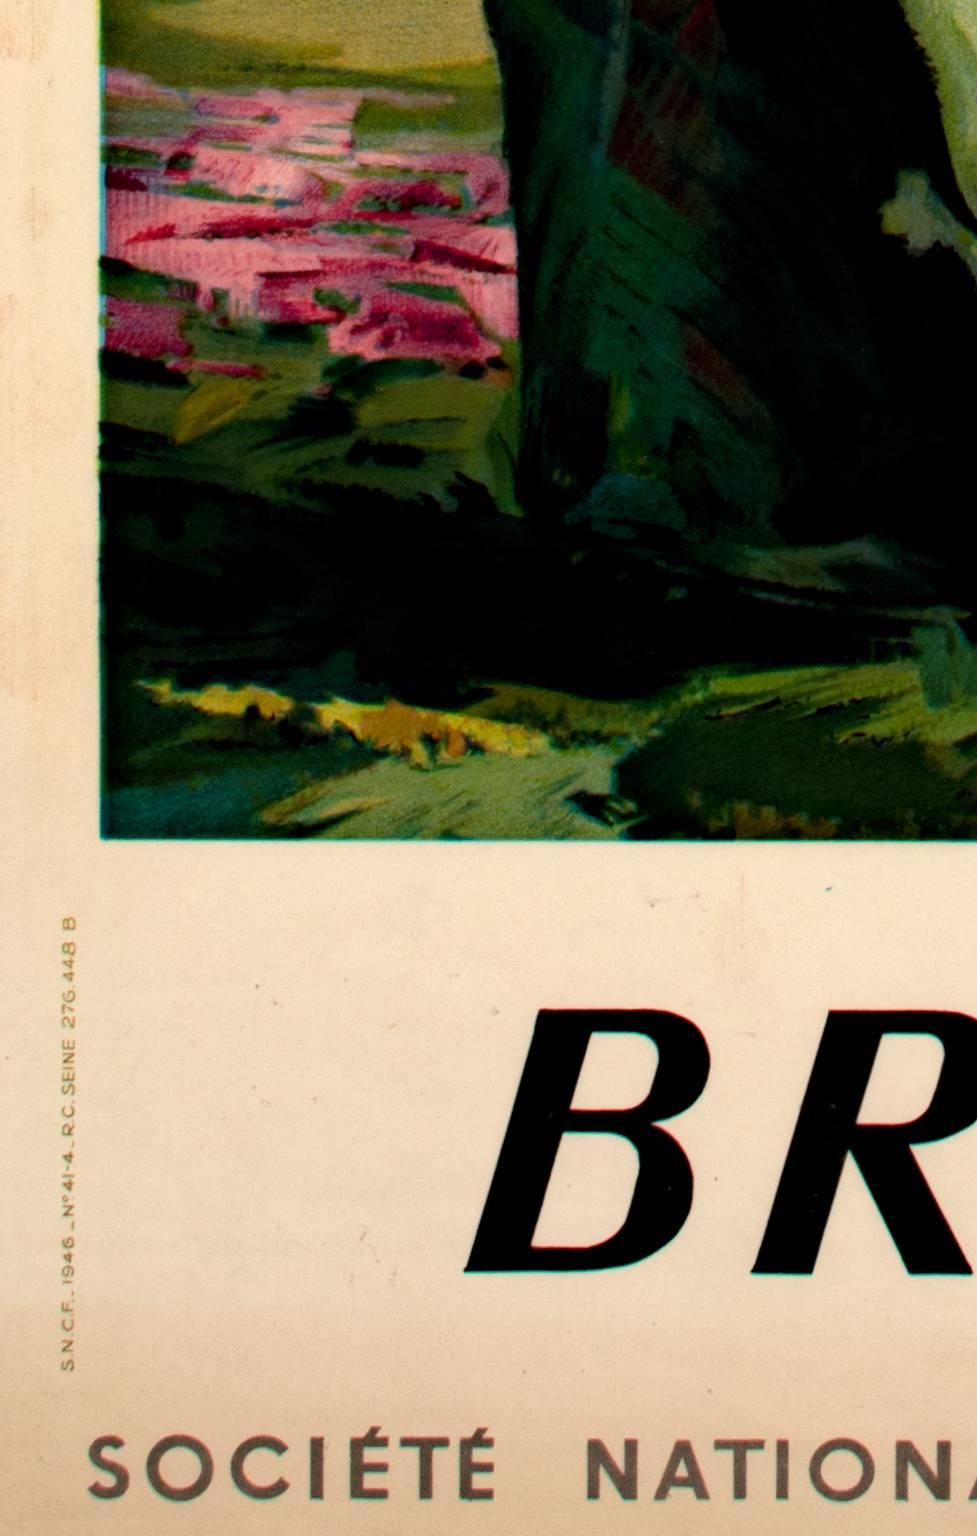 Bretagne (Societe National des Chemins de Fer Francais) - Print by Robert Abel